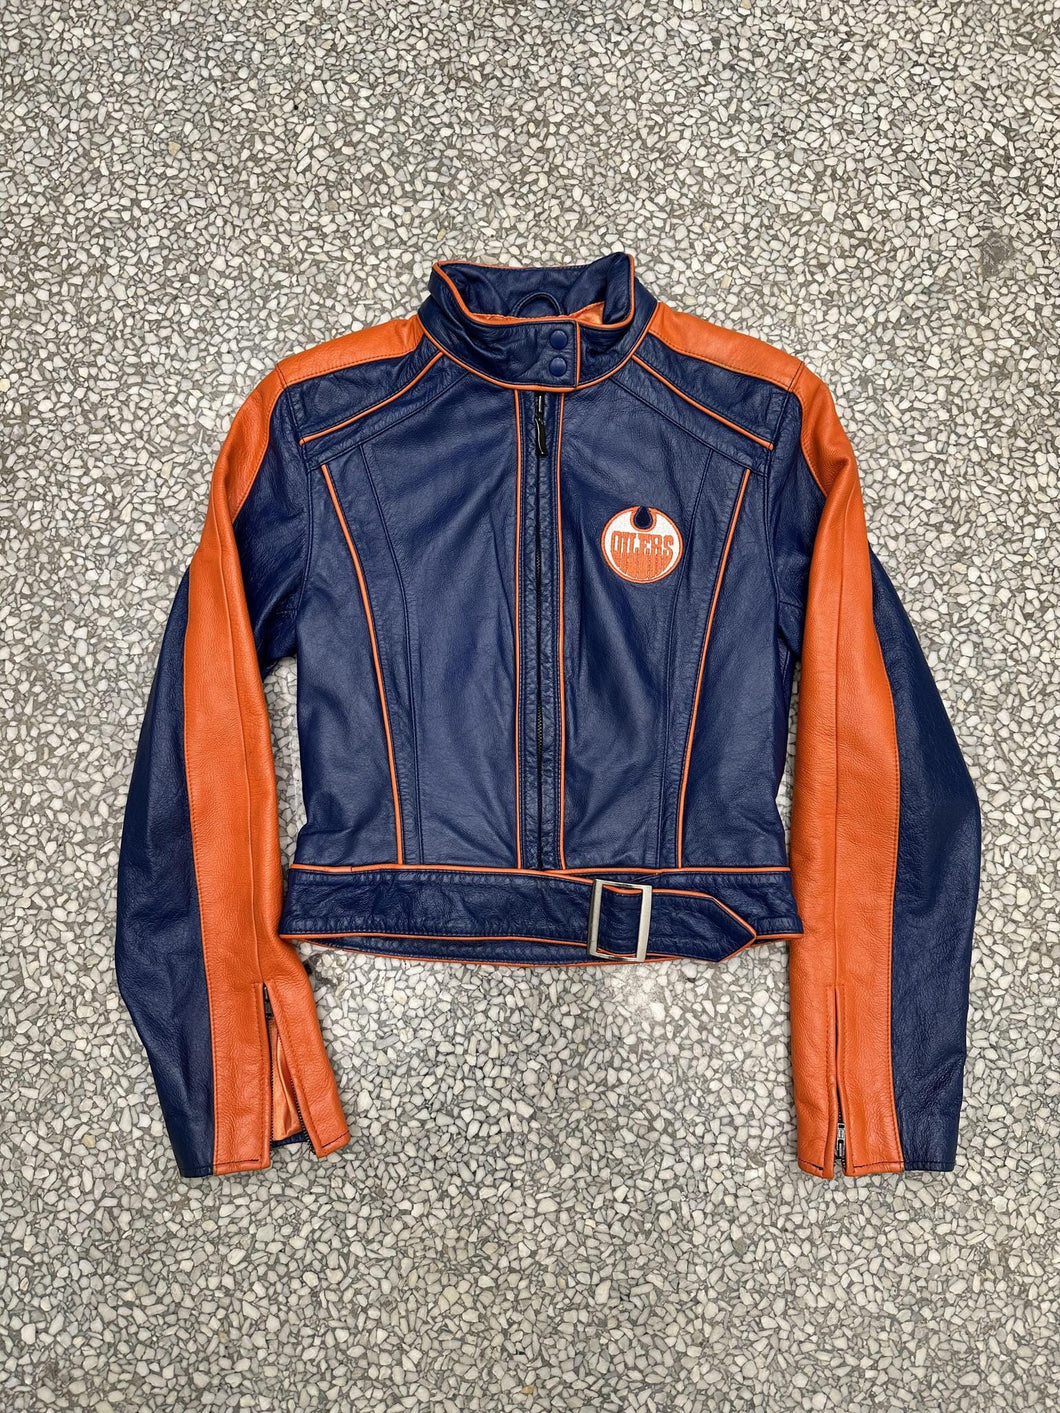 Edmonton Oilers Vintage 90s Leather Biker Jacket ABC Vintage 